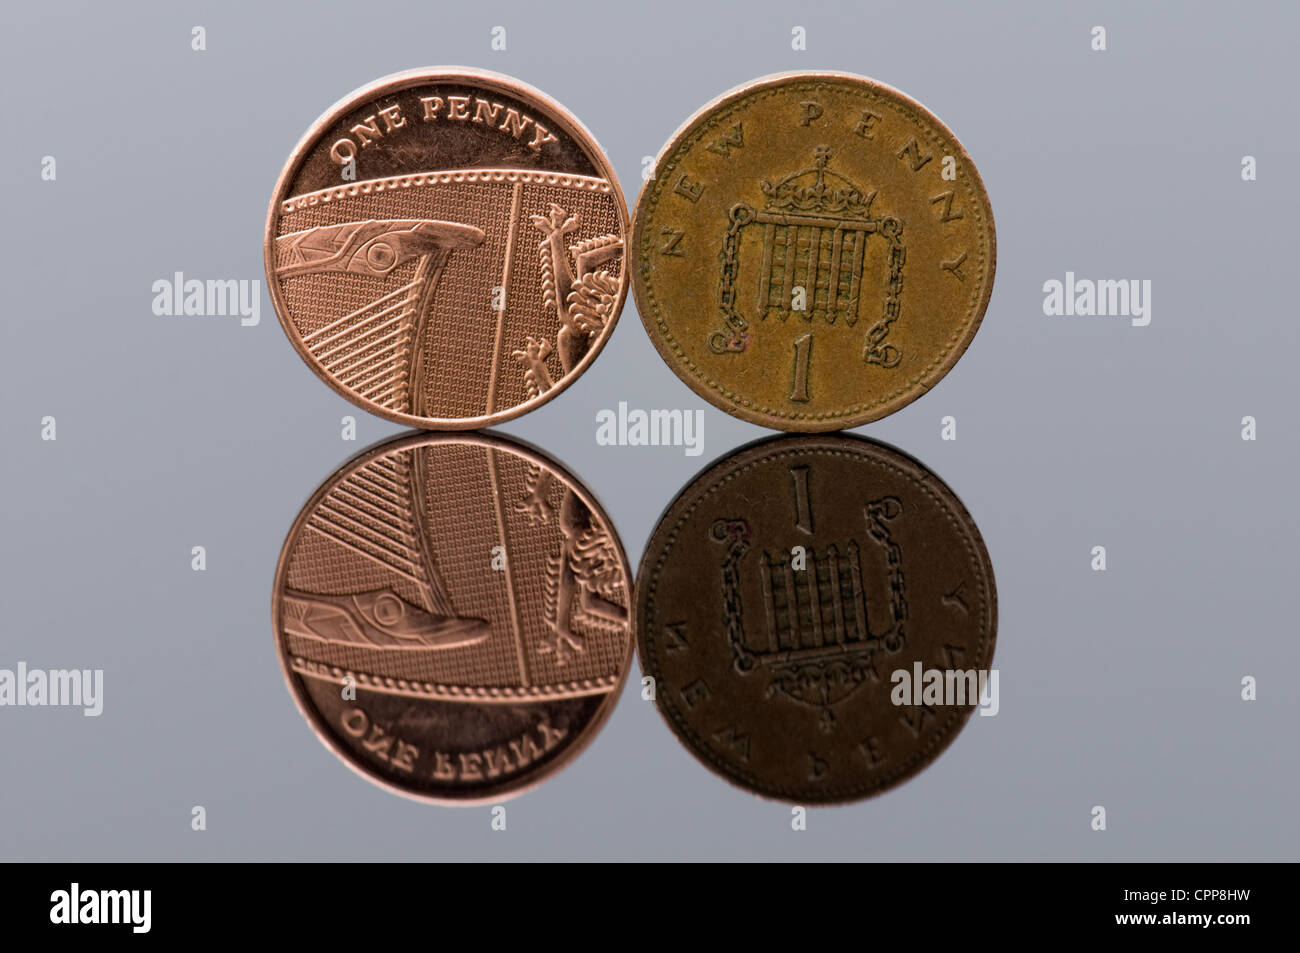 Un nouveau morceau de penny avec l'ancien style penny avec réflexion, concept chaque sou compte Banque D'Images